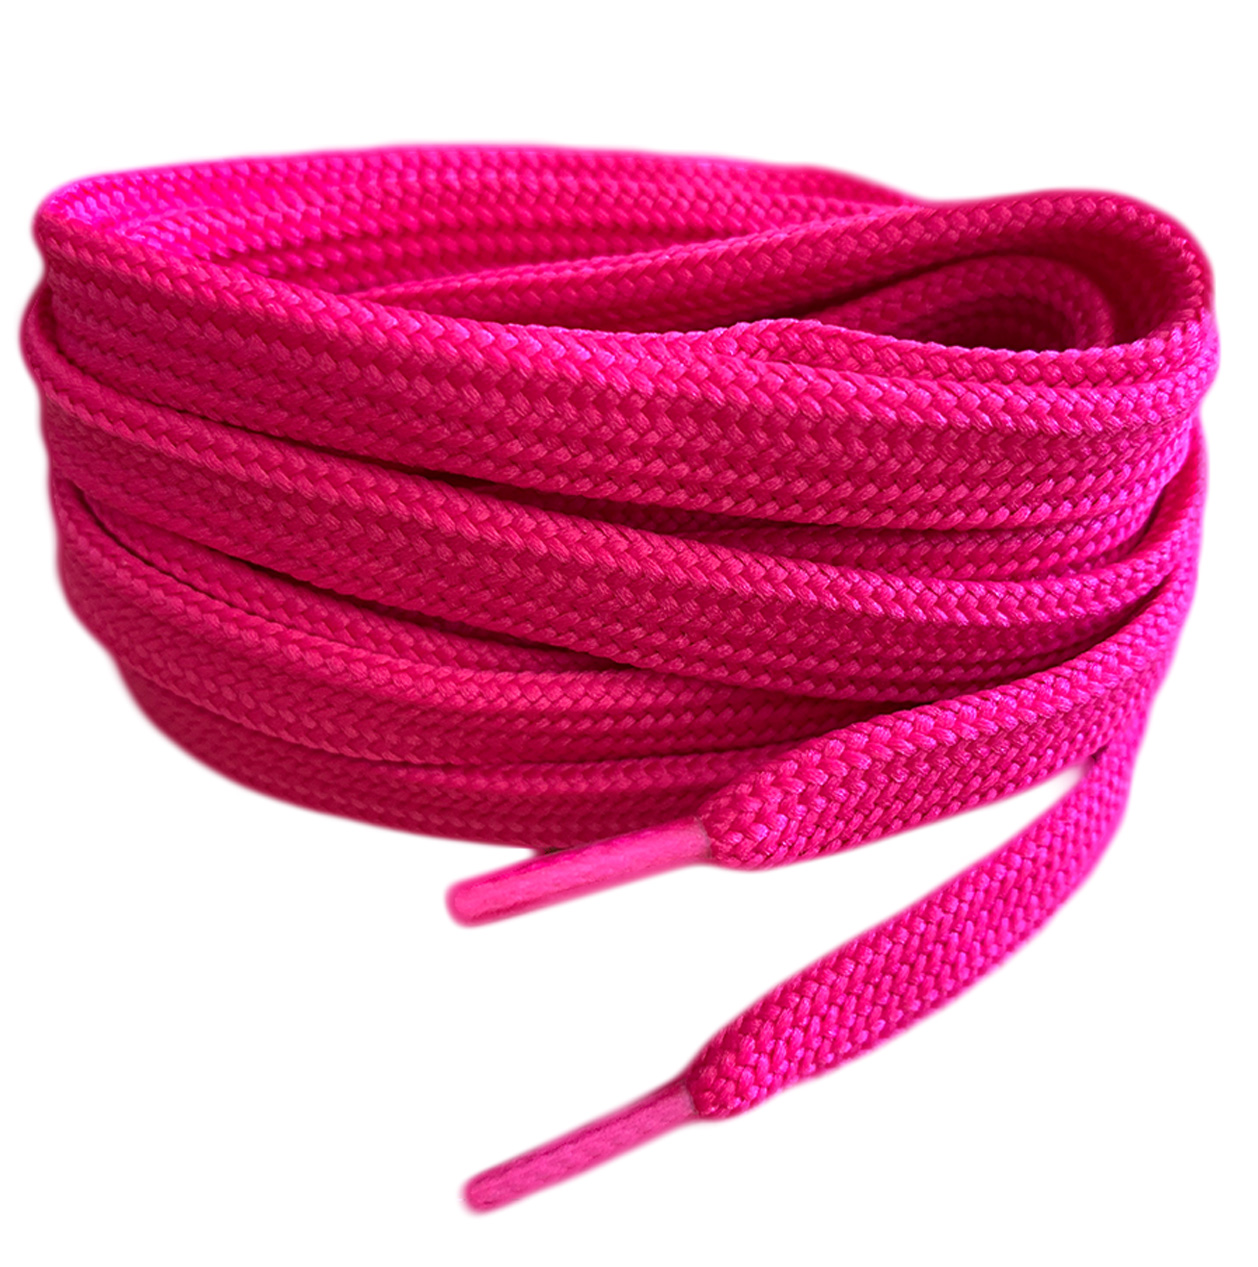 Raspberry-Pink-Flat-Shoelaces-1-1.jpg